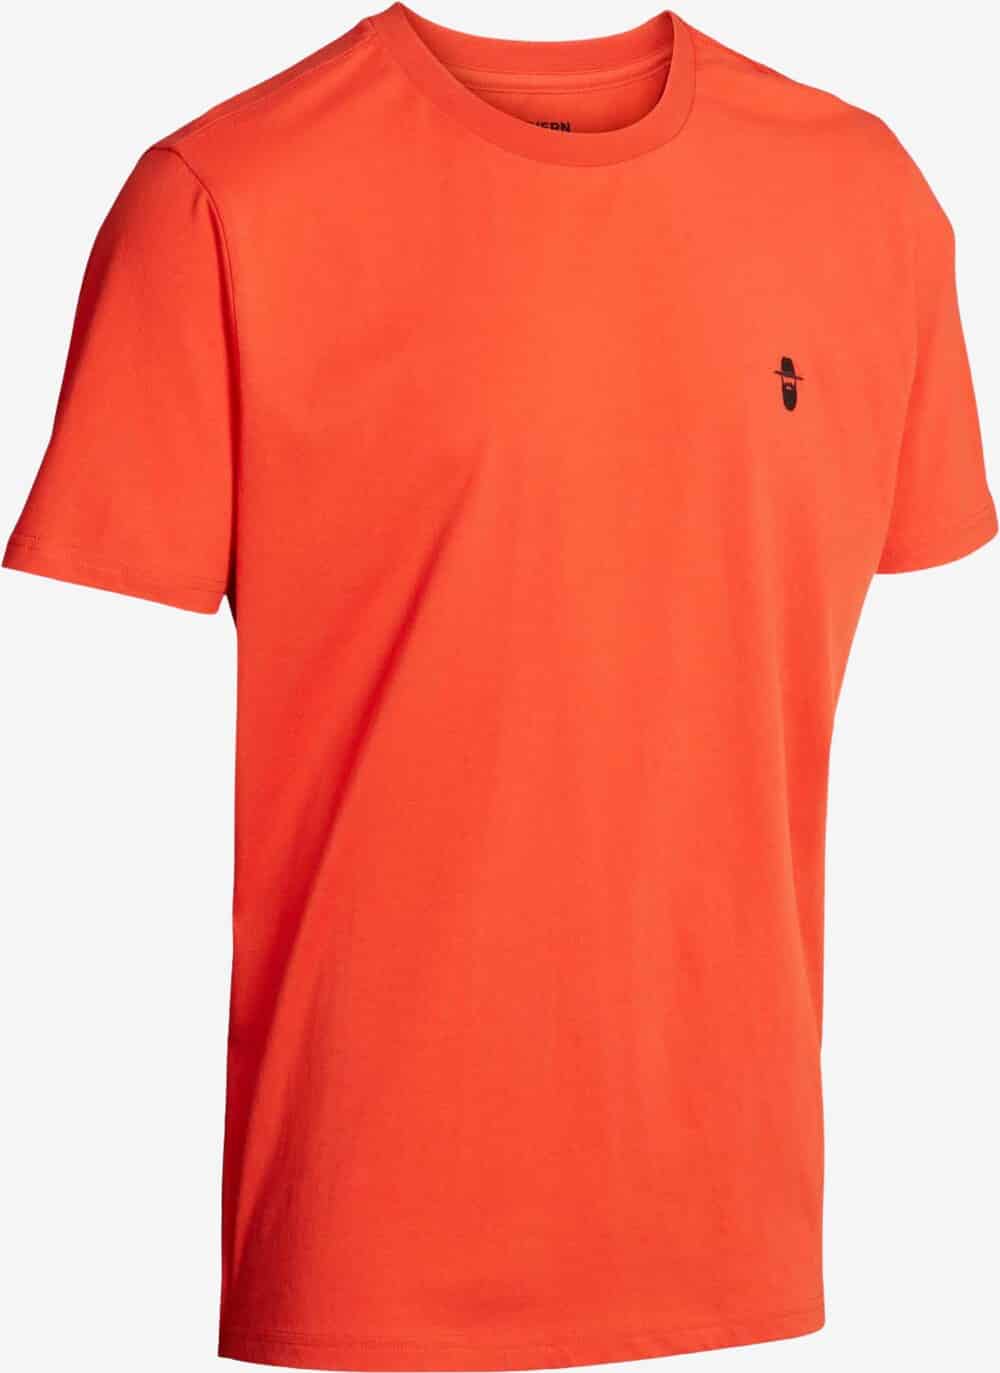 Se Northern Hunting - Karl T-shirt (Orange) - L hos Friluft.dk